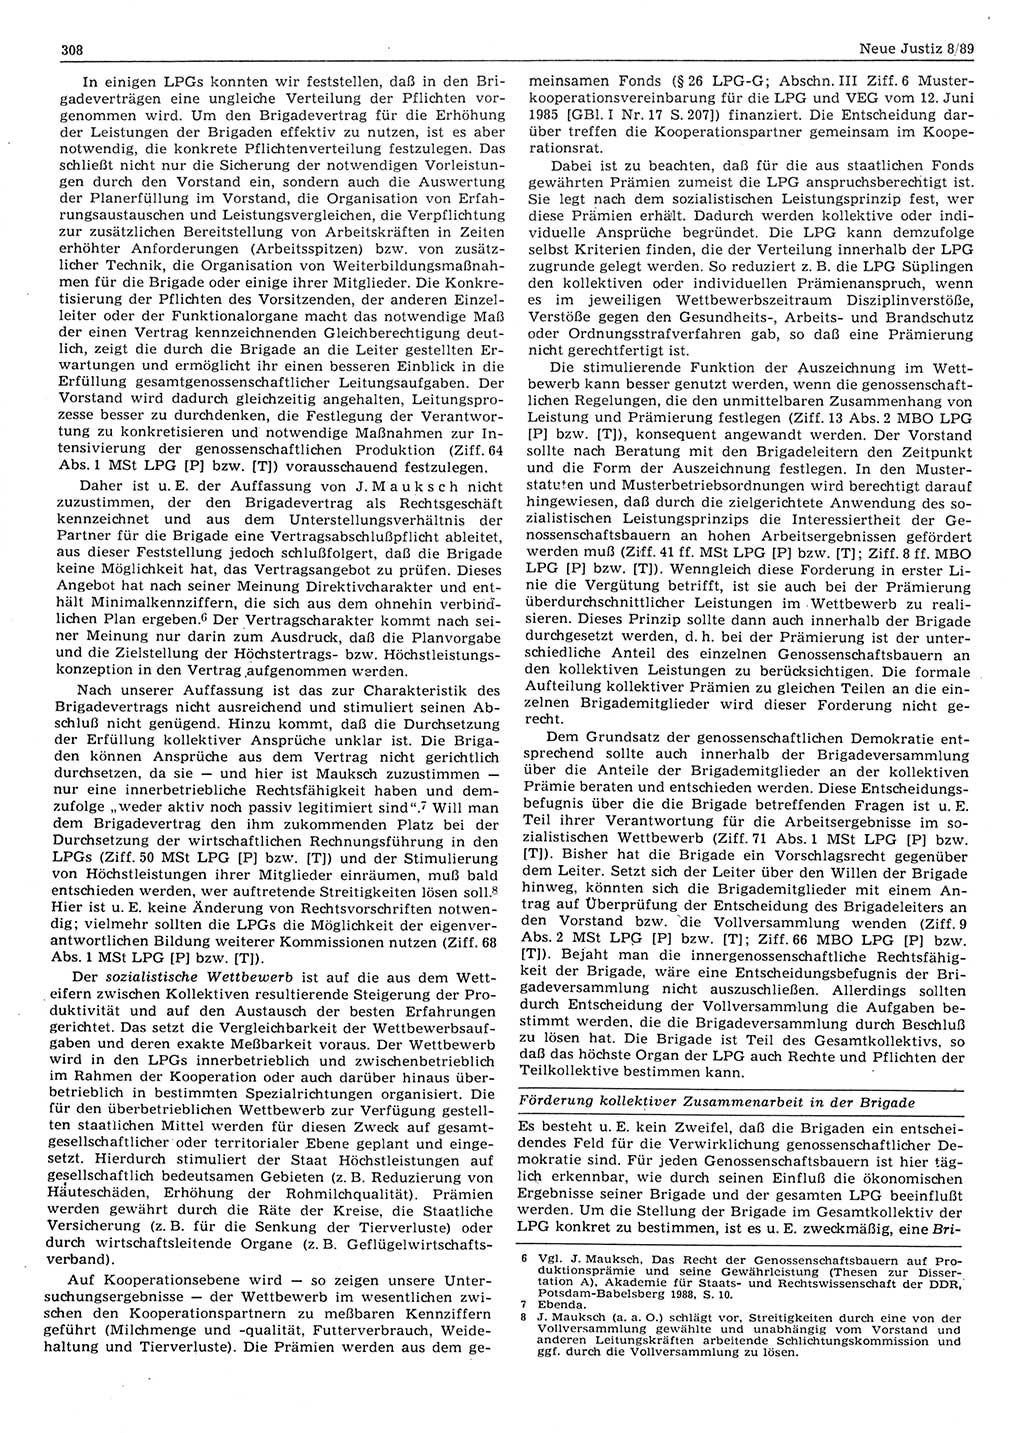 Neue Justiz (NJ), Zeitschrift für sozialistisches Recht und Gesetzlichkeit [Deutsche Demokratische Republik (DDR)], 43. Jahrgang 1989, Seite 308 (NJ DDR 1989, S. 308)